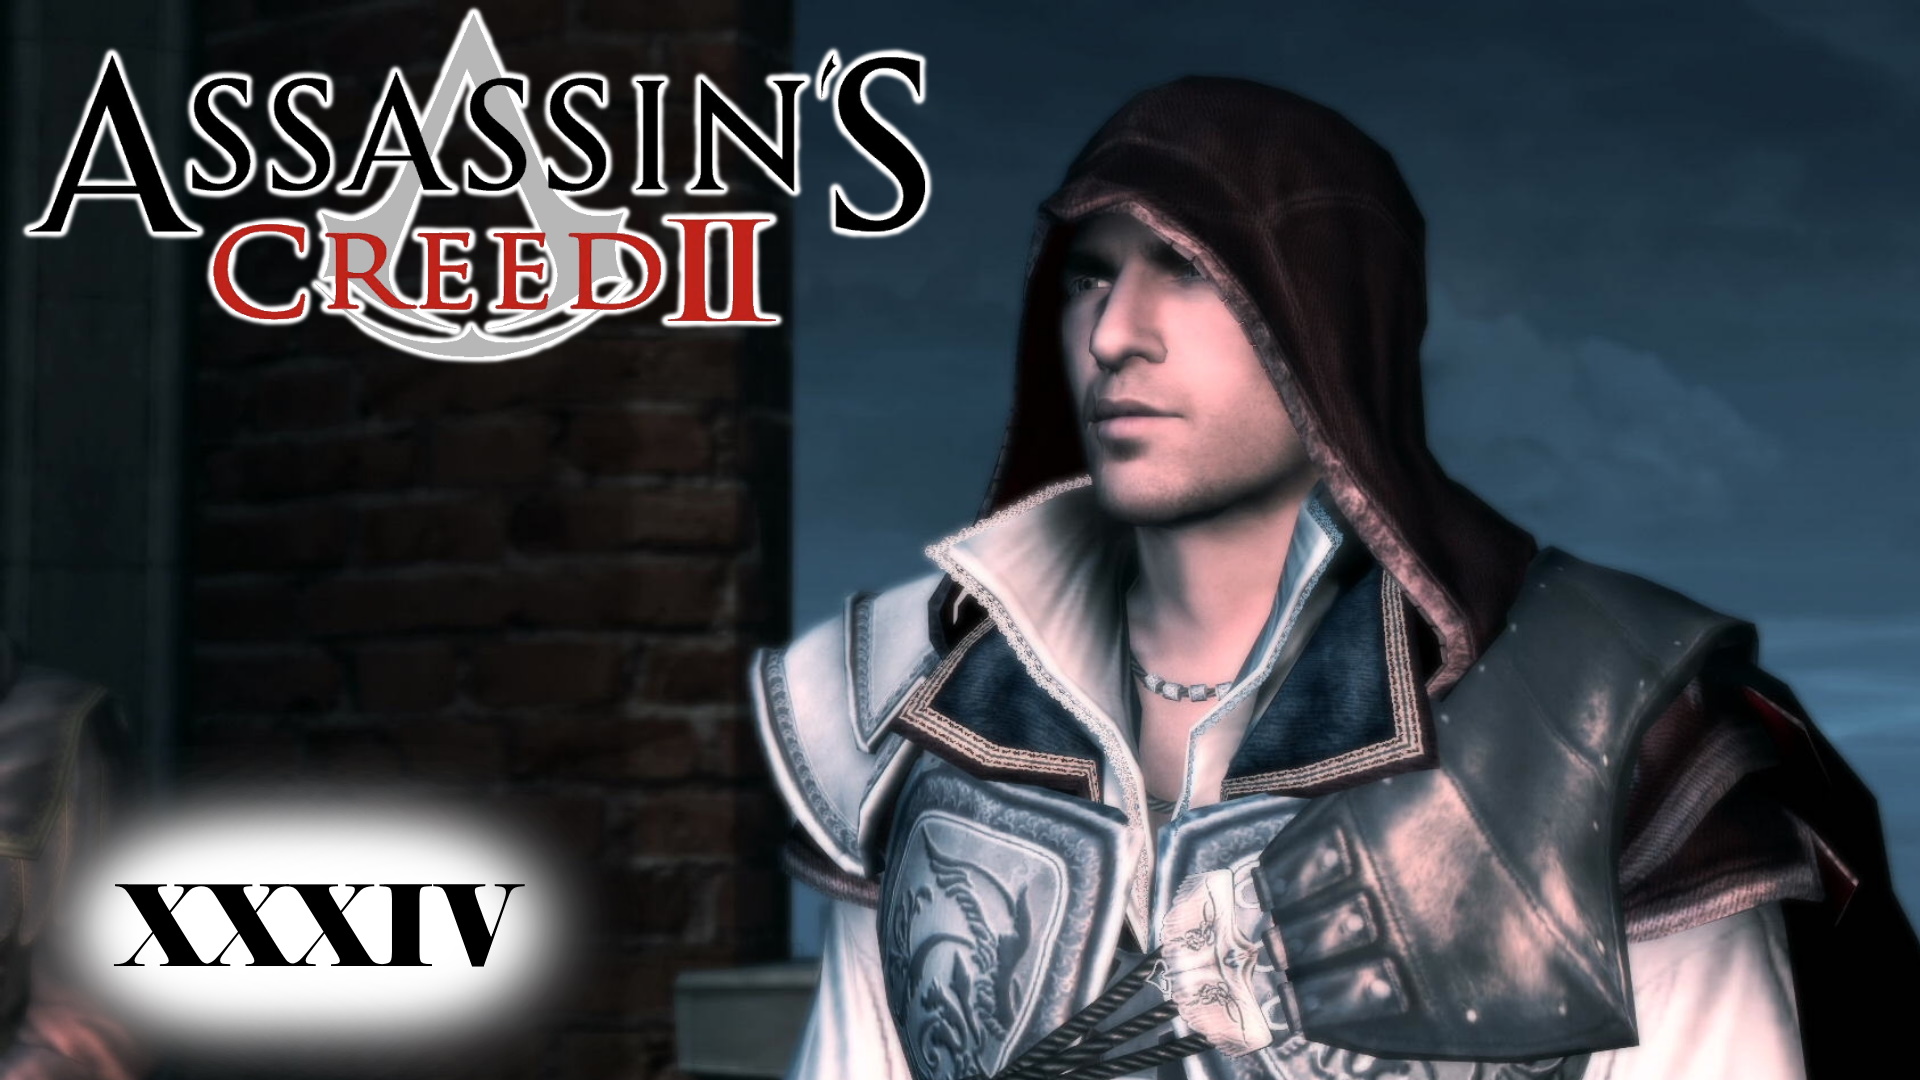 Ассасин Крид 2 мудрецы опирались на великое могущество. Мудрецы опирались на великое могущество Assassin's Creed. Мудрецы опирались на великое могущество Assassin's Creed 2. Assassin s Creed Revelations Девичья башня. Мудрецы опирались на великое